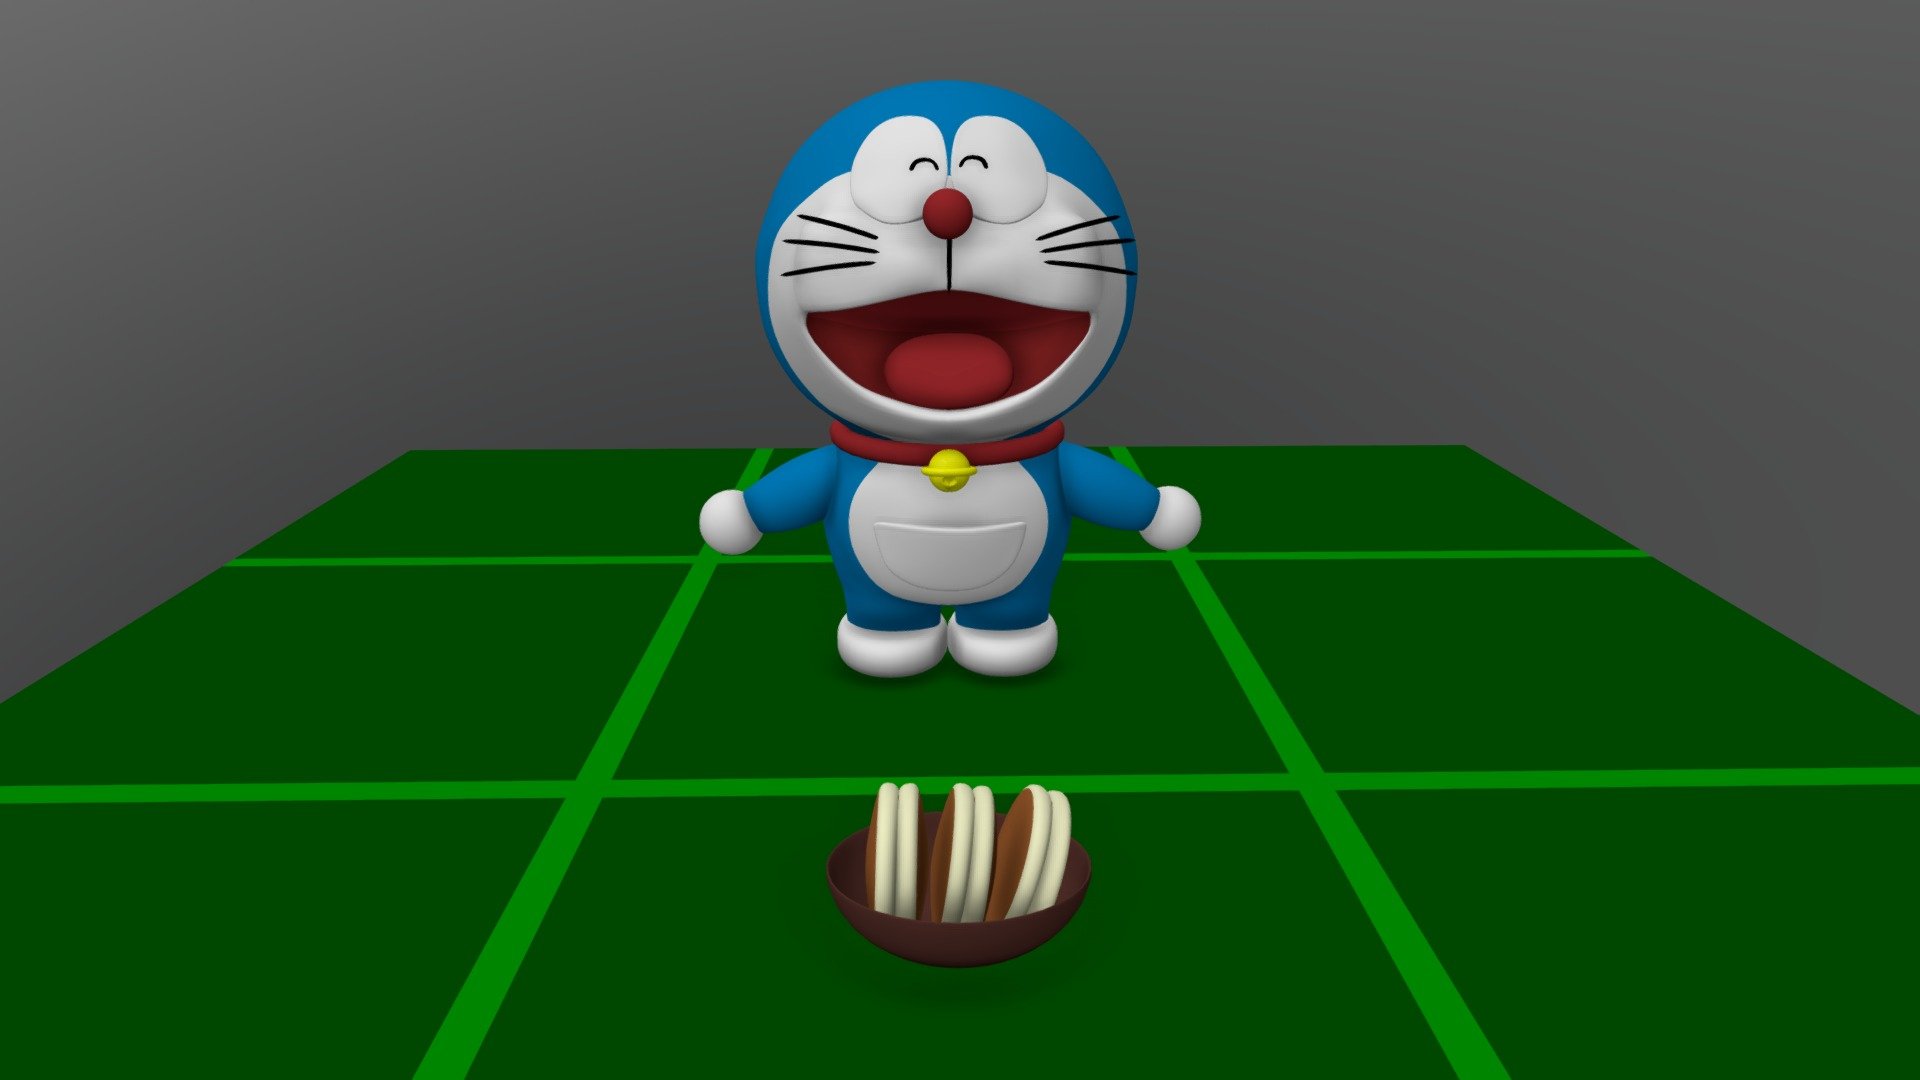 Doraemon - 3D model by hemantajitsingh21 3d model